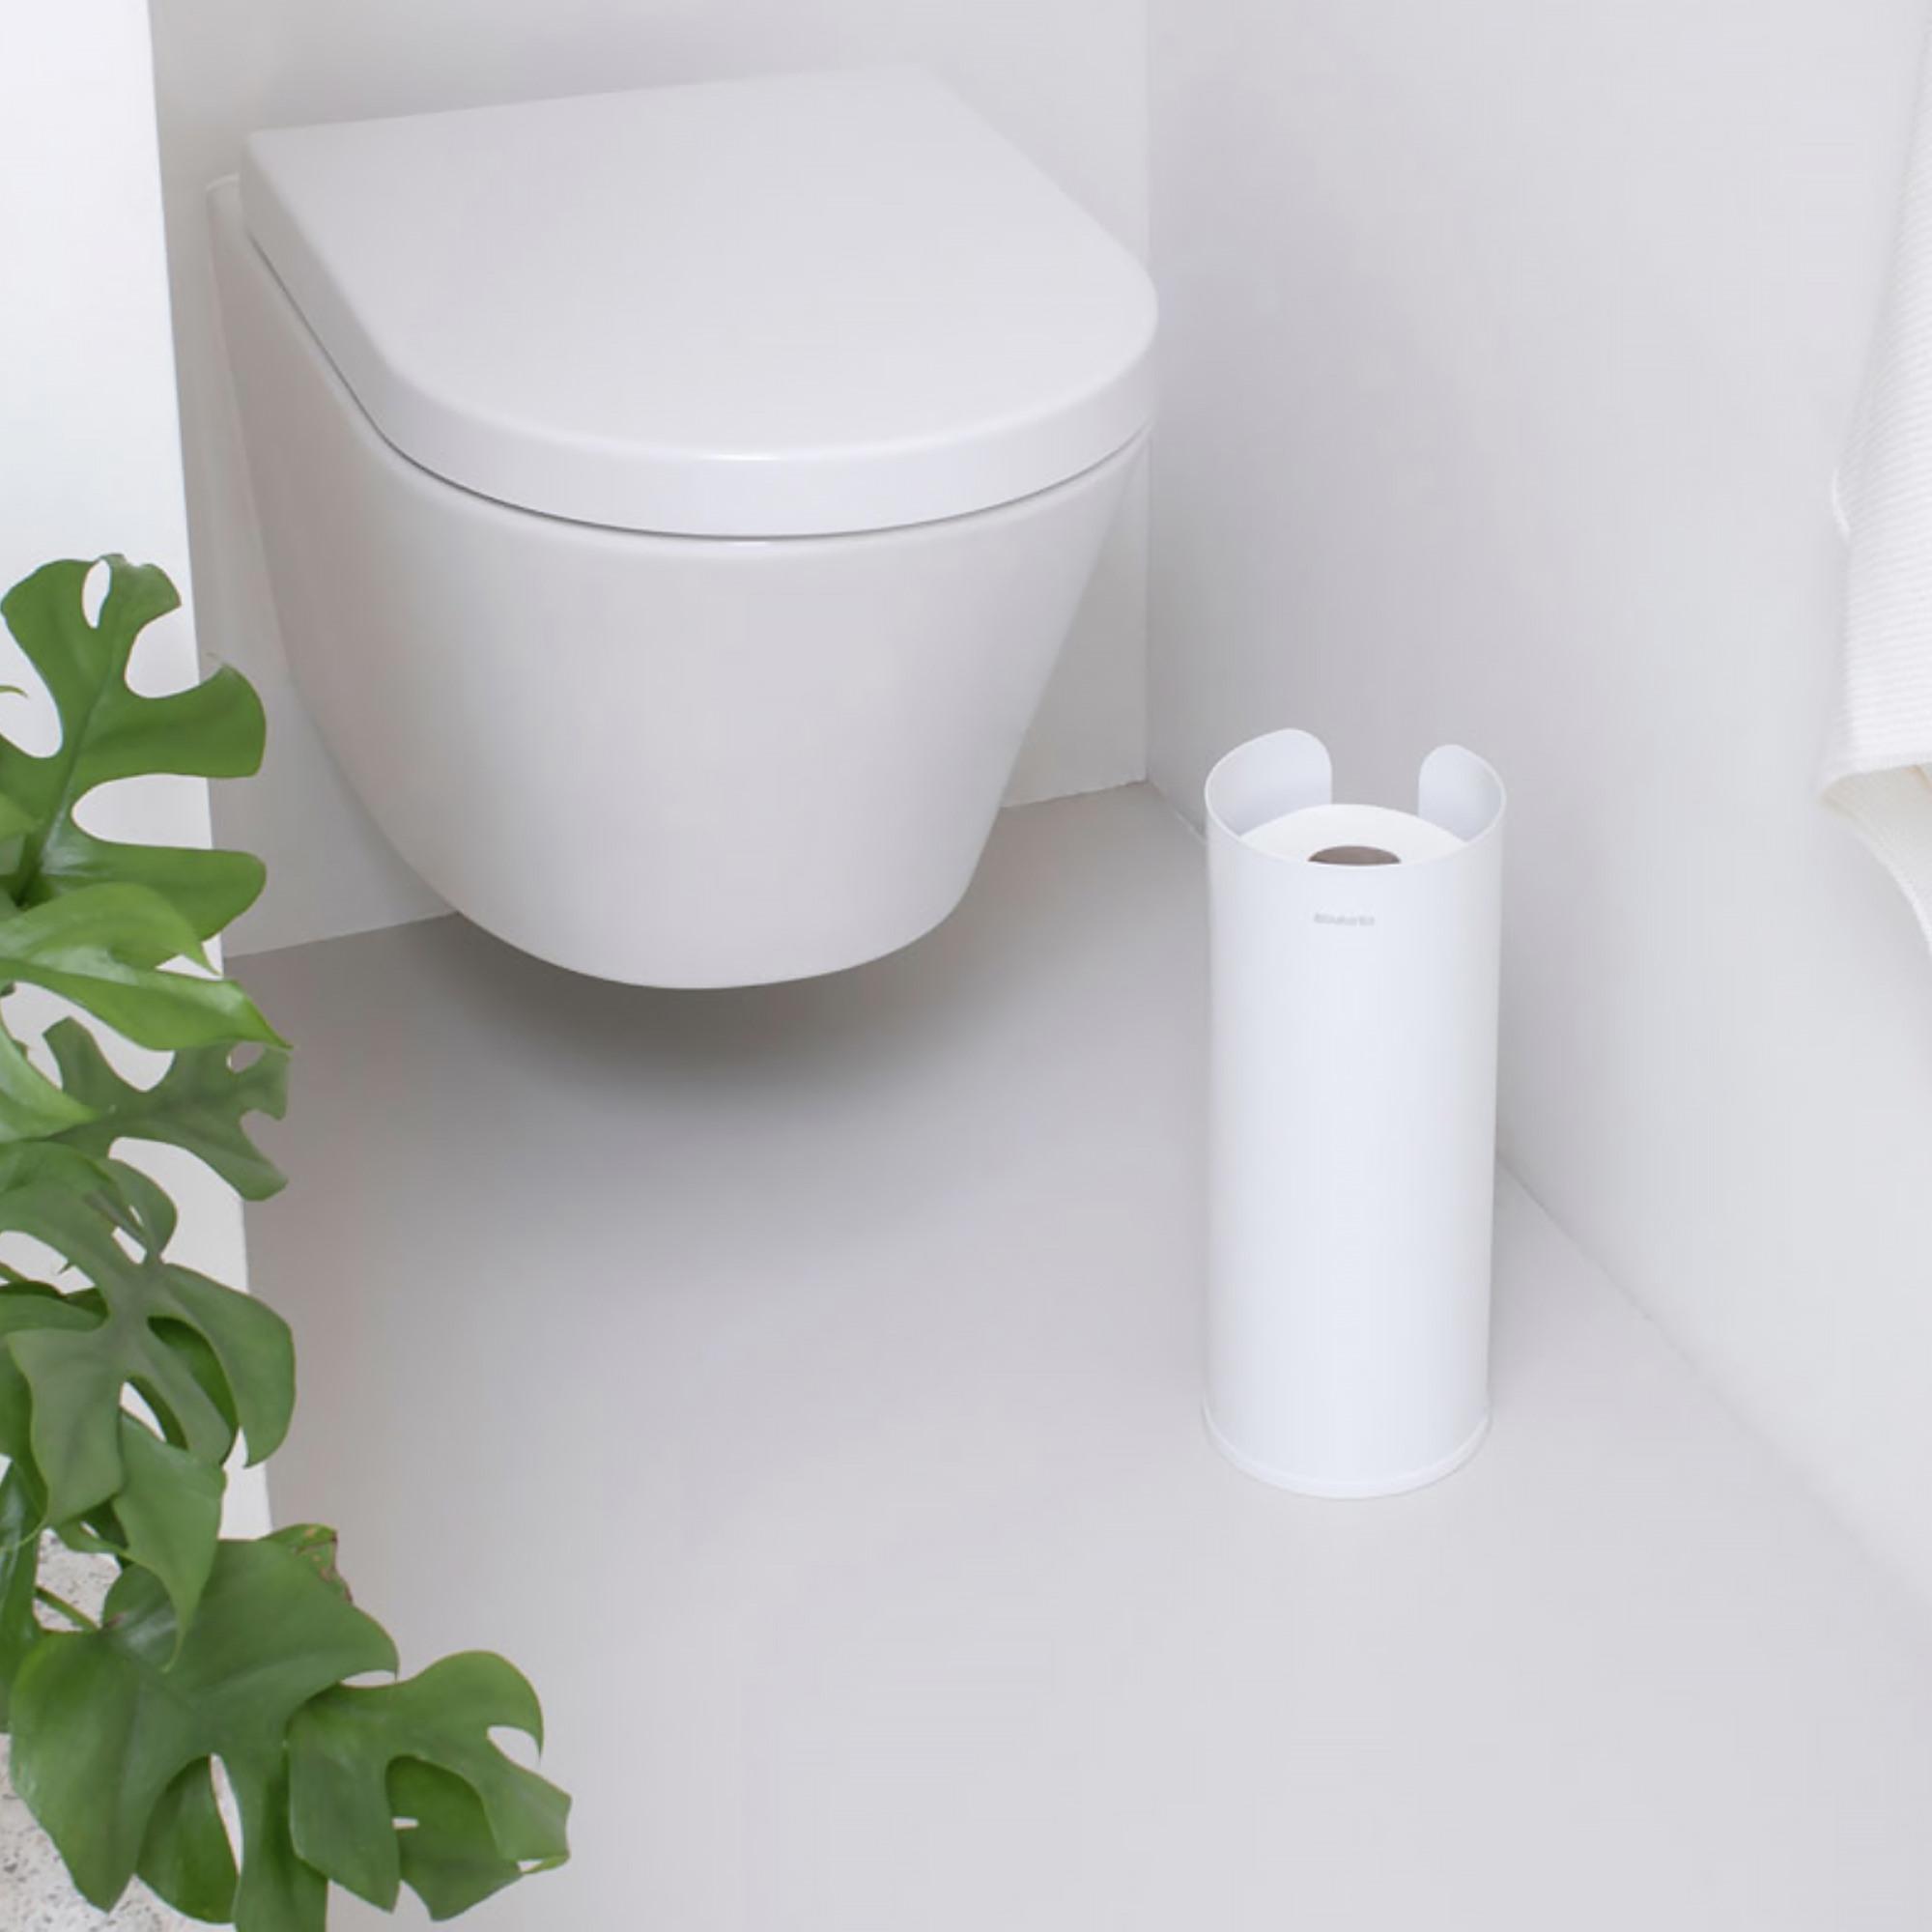 Brabantia Toilet Paper Roll Holder White Image 2